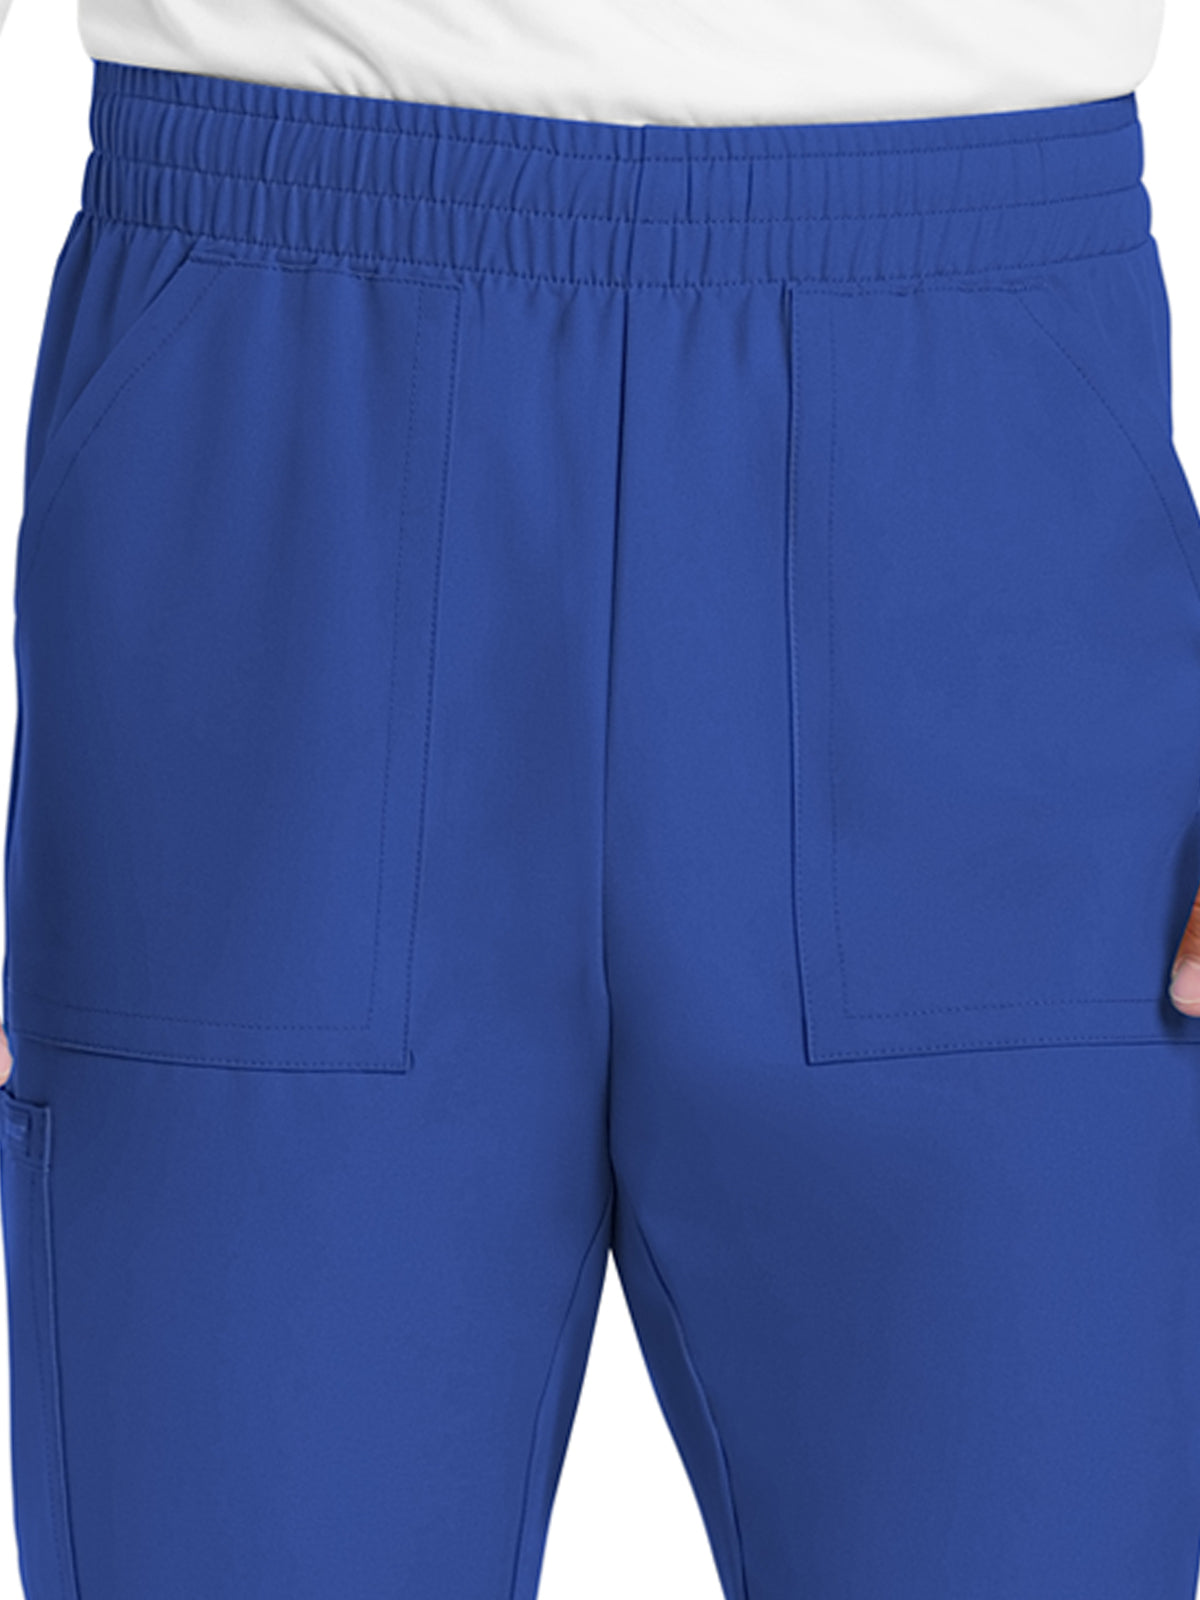 Men's 4-Pocket Mid Rise Jogger Pant - CK278A - Galaxy Blue